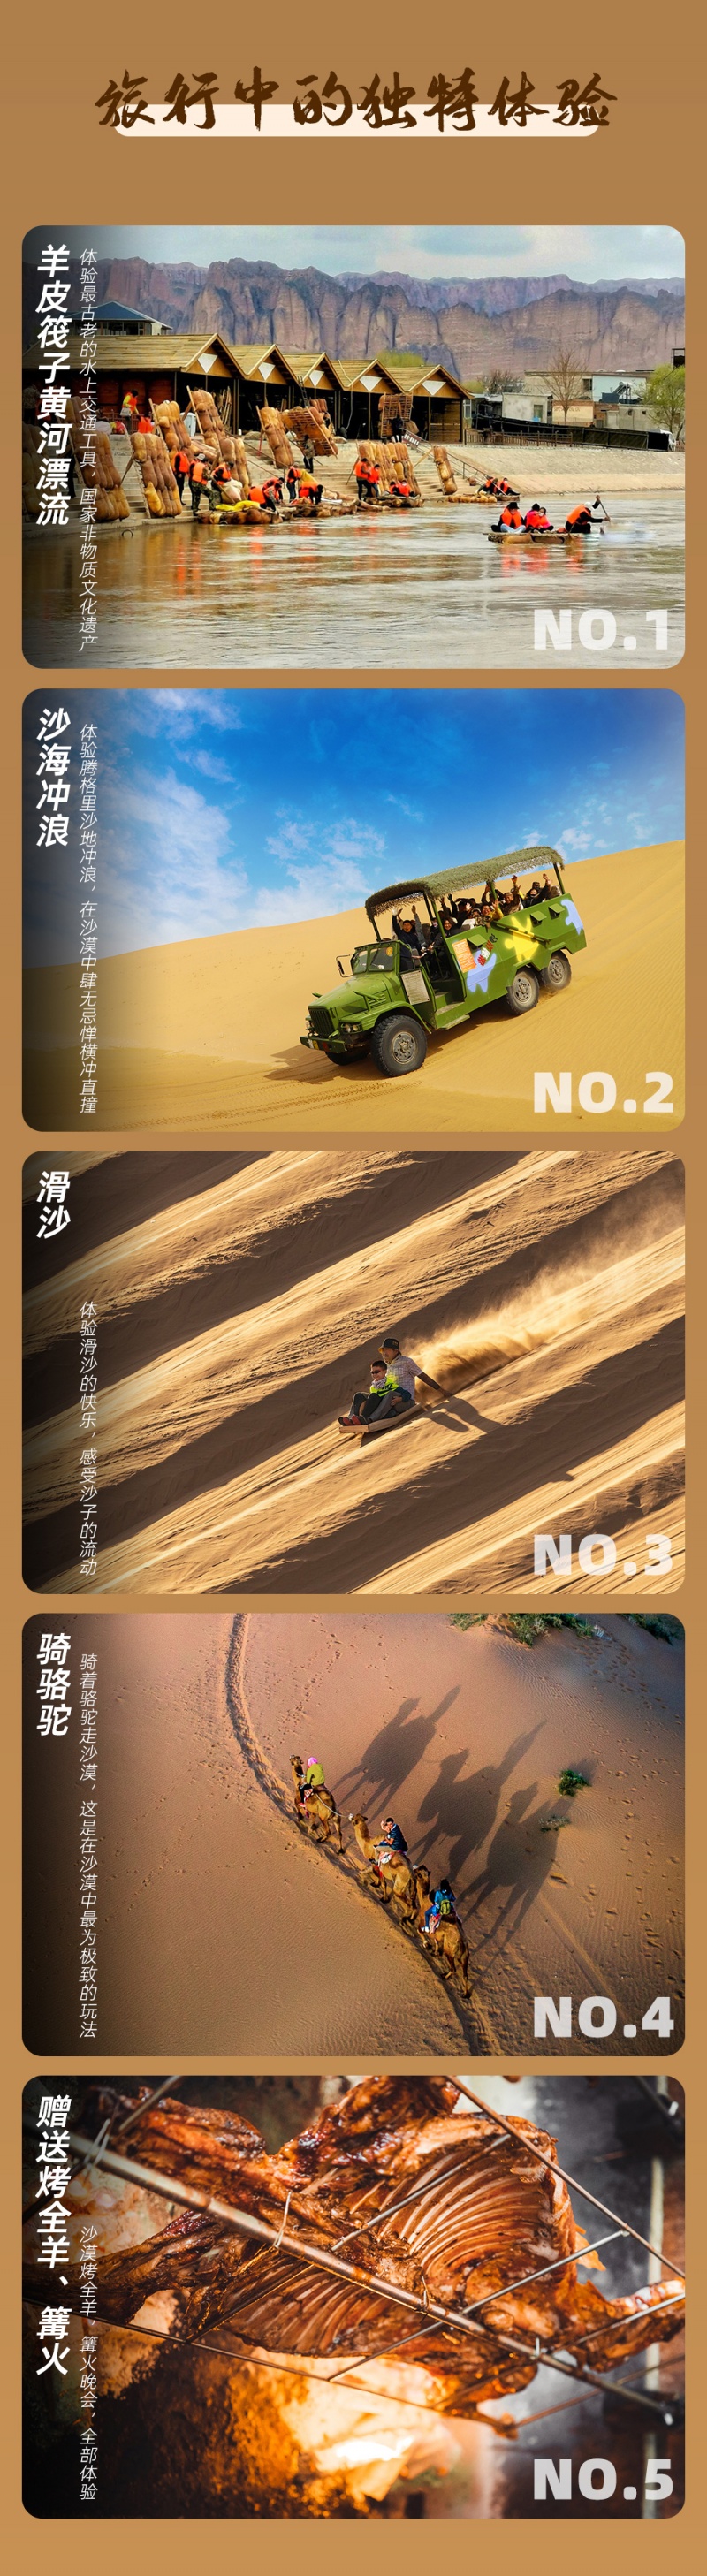 嗨游沙漠-游历黄河-亮点图-改1--3D-2